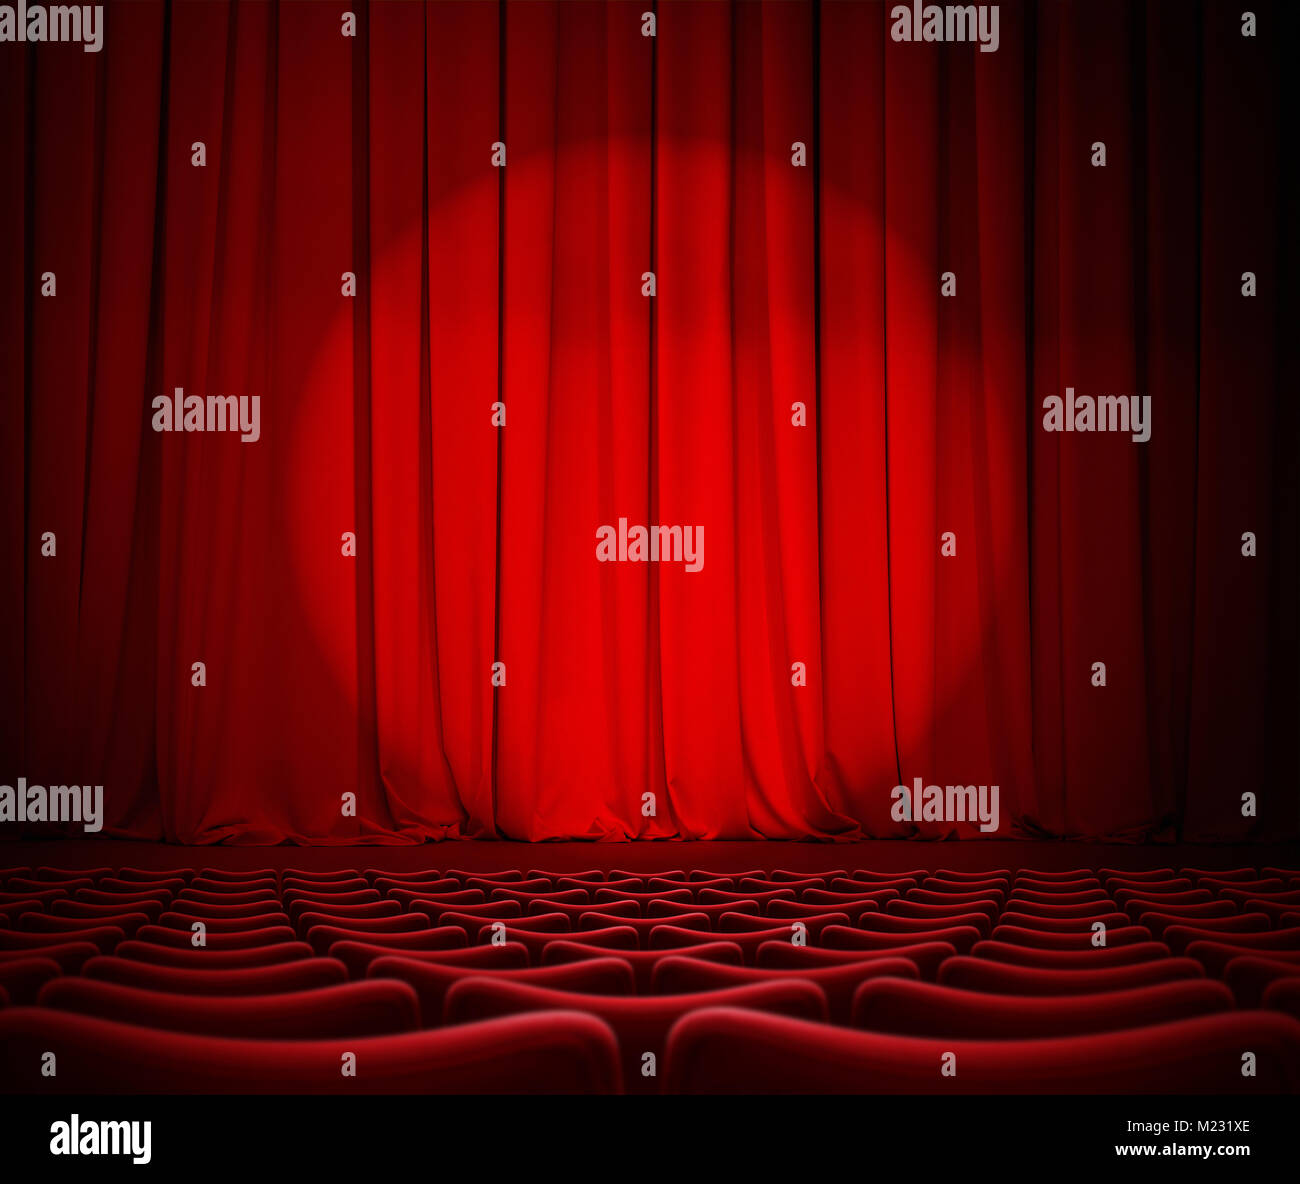 Theater rote Vorhänge und Sitze 3 Abbildung d Stockfoto